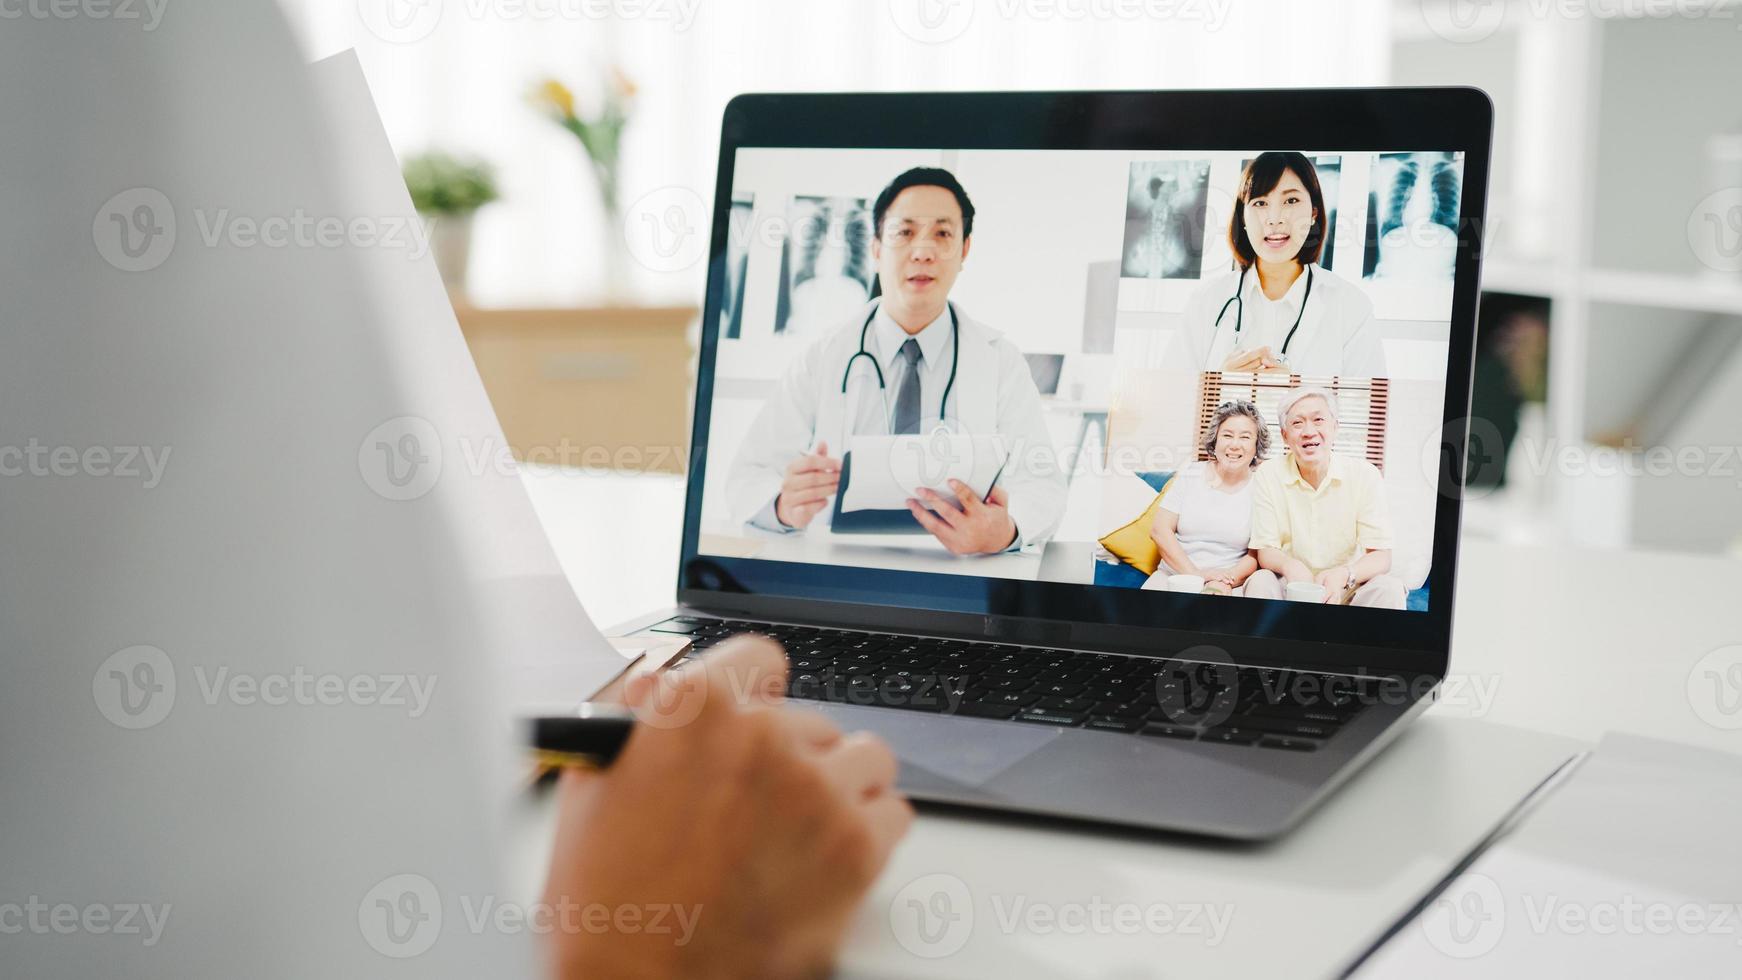 ung asiatisk damläkare i vit medicinsk uniform med stetoskop som använder dator laptop talar videokonferenssamtal med patienten vid skrivbordet på vårdkliniken eller sjukhuset. konsult- och terapikoncept. foto